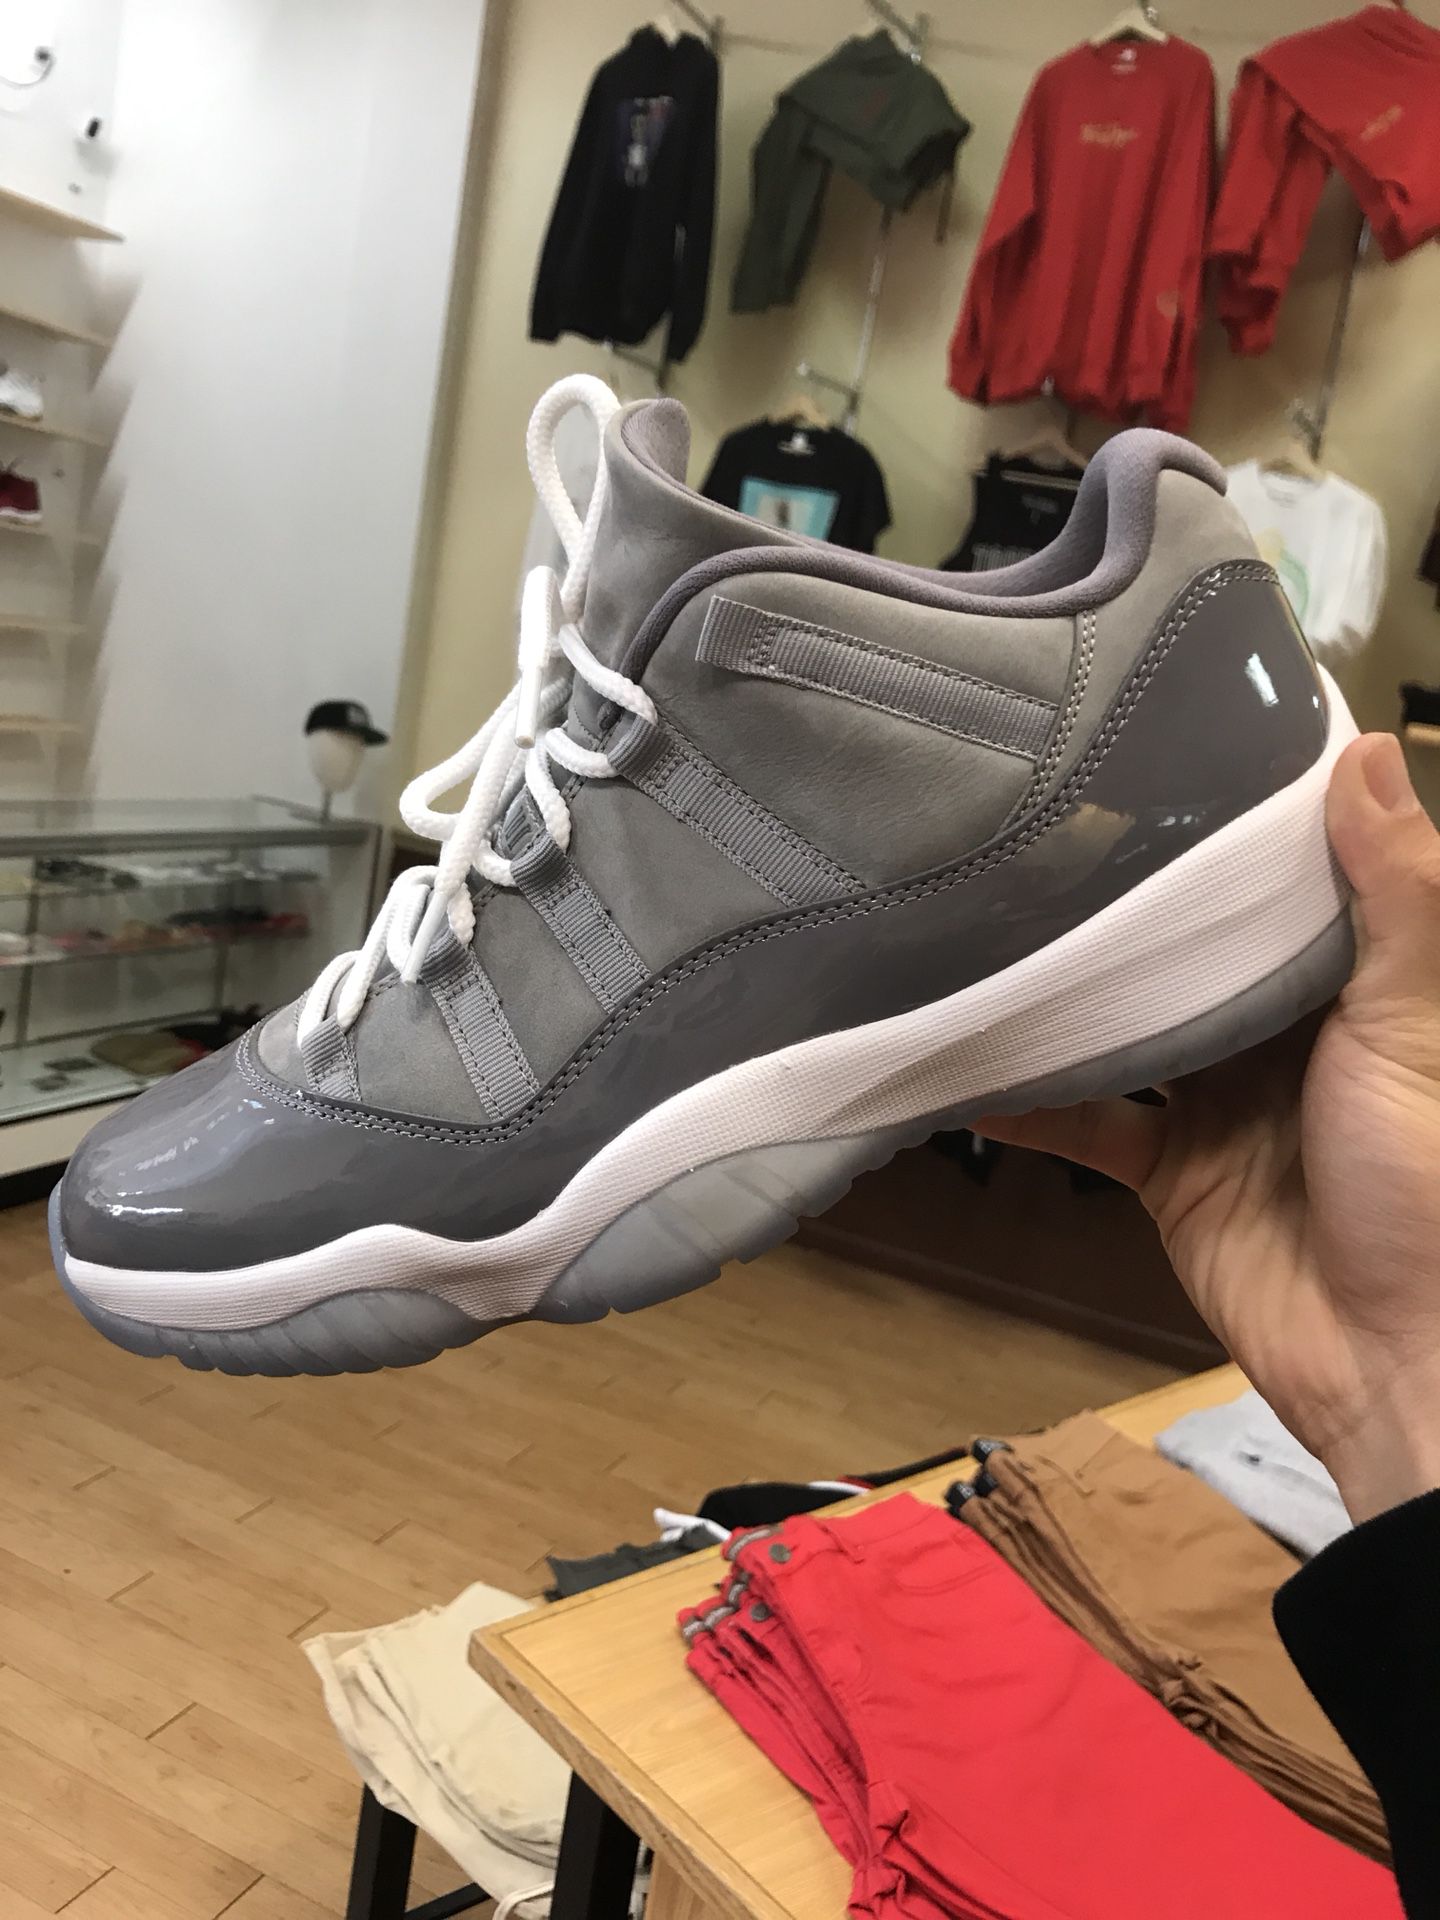 Air Jordan 11 Low cool grey Size 12